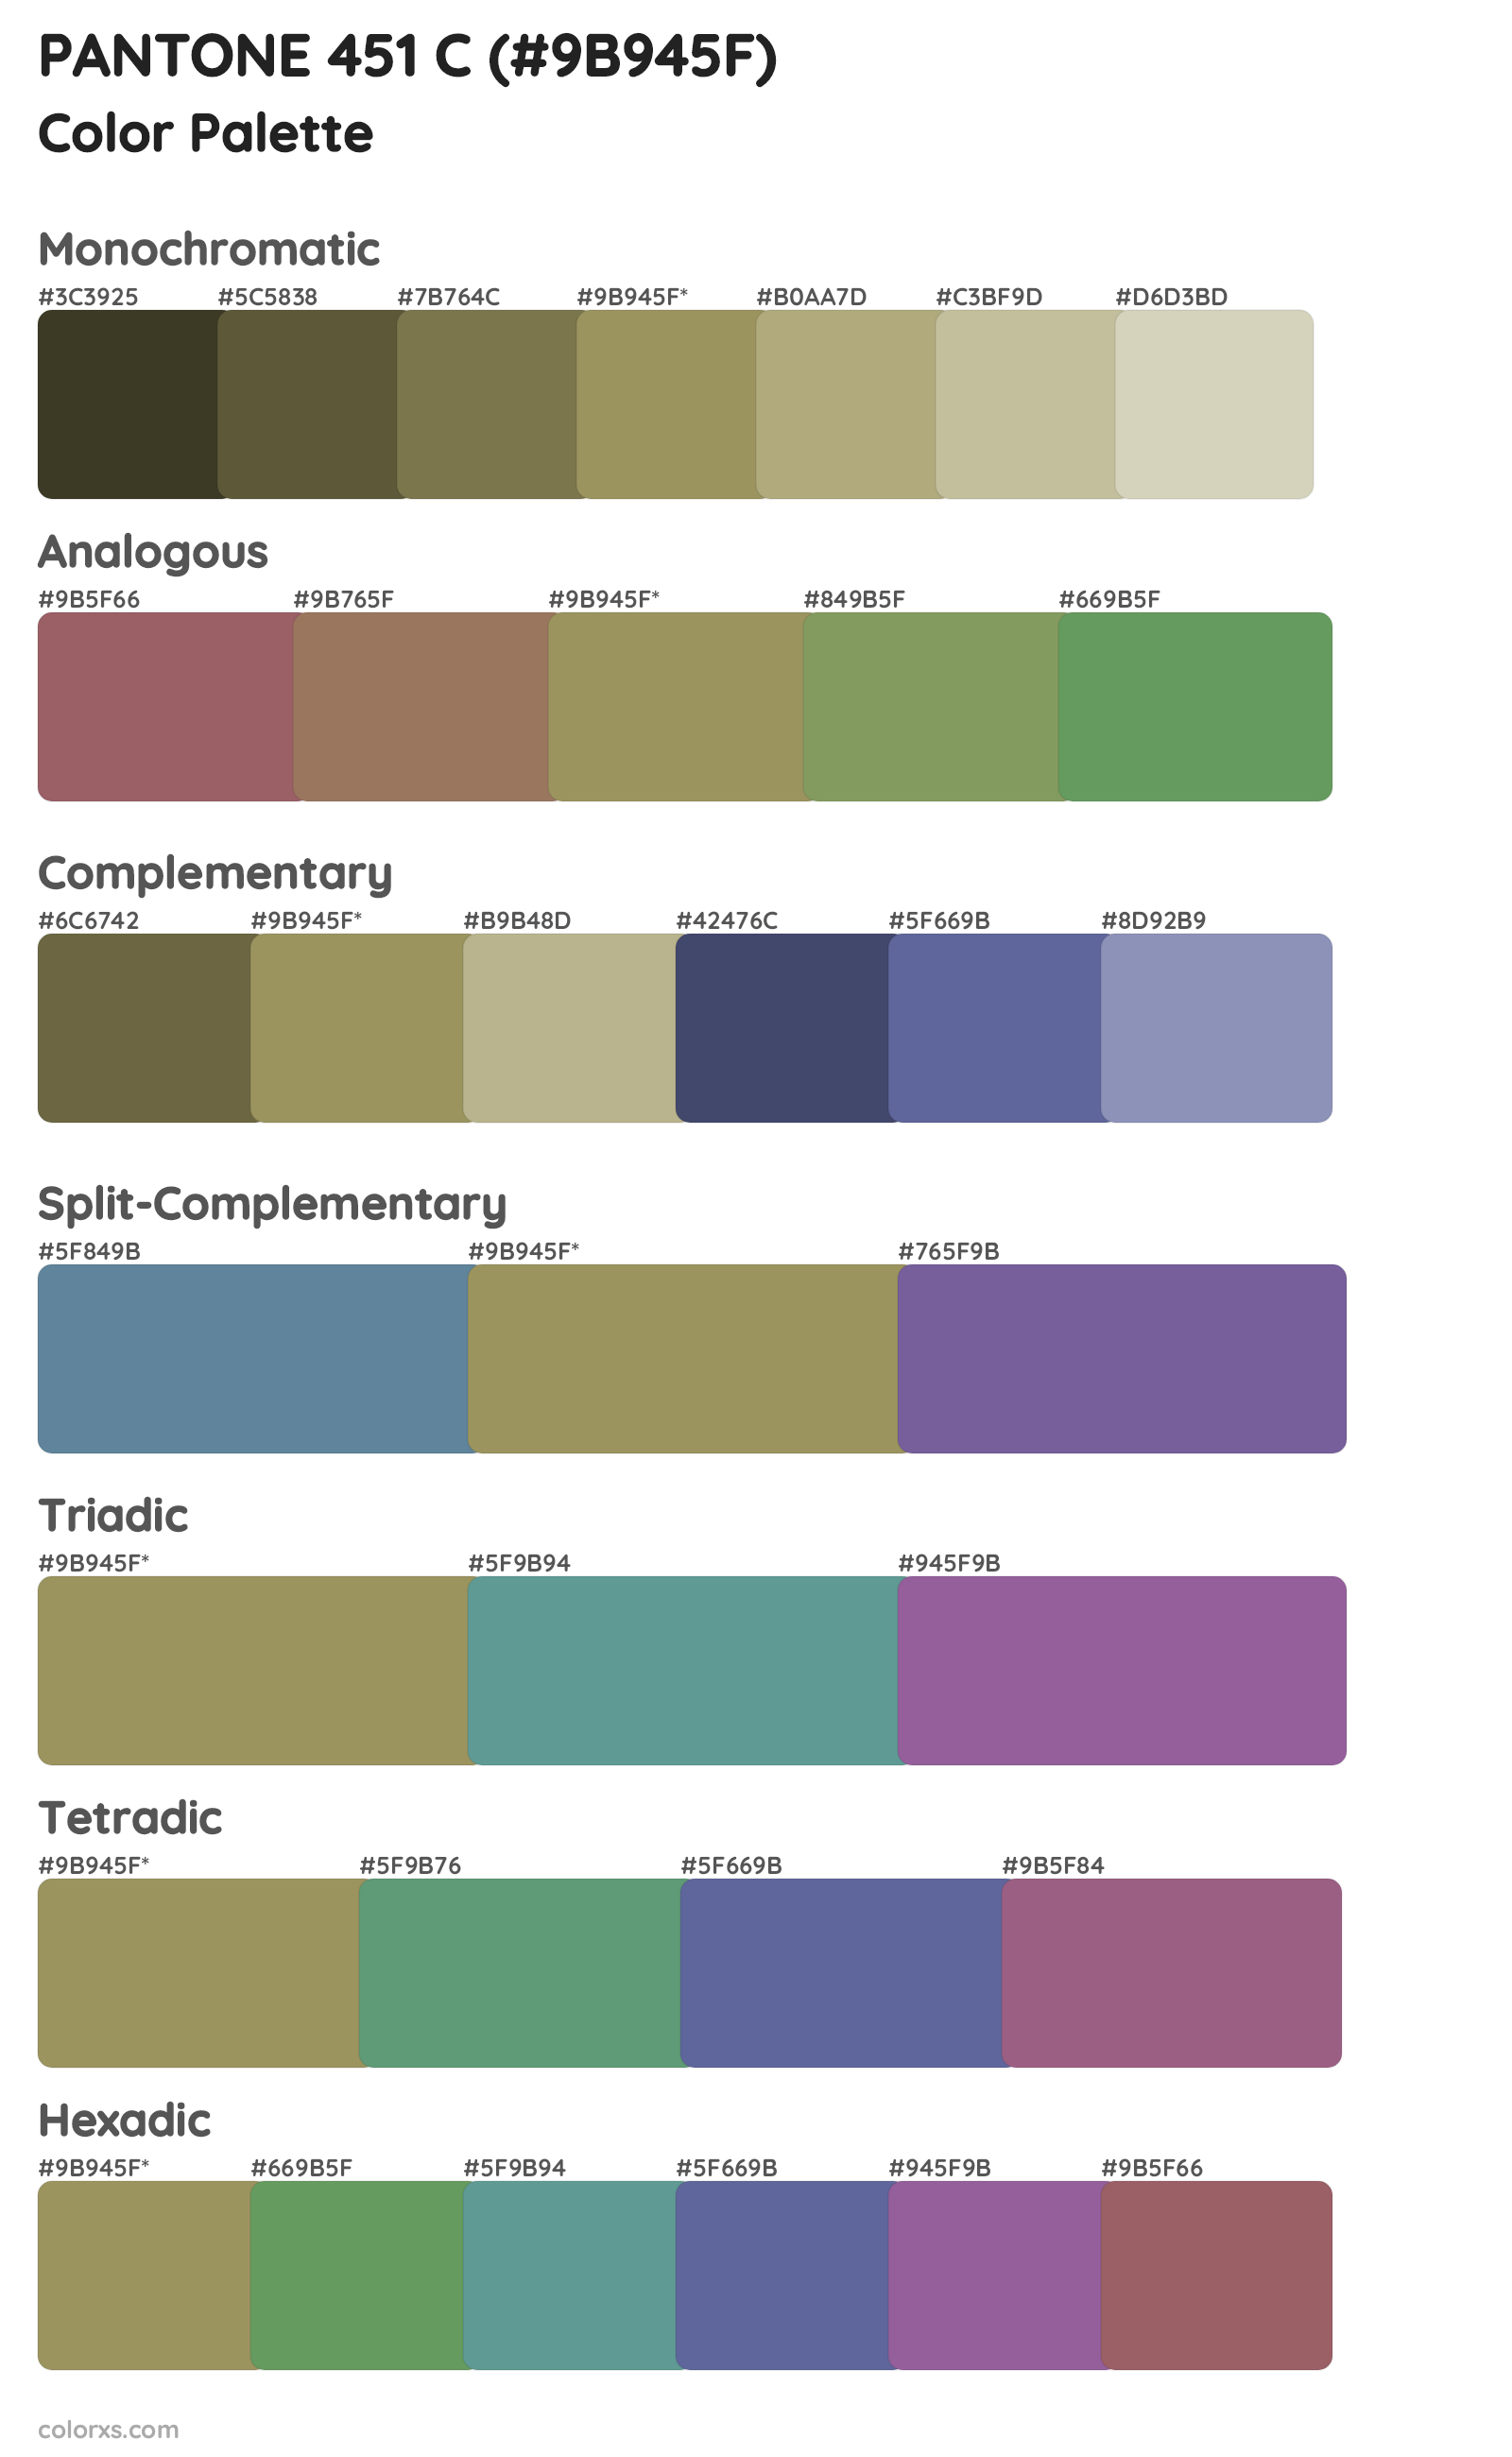 PANTONE 451 C Color Scheme Palettes